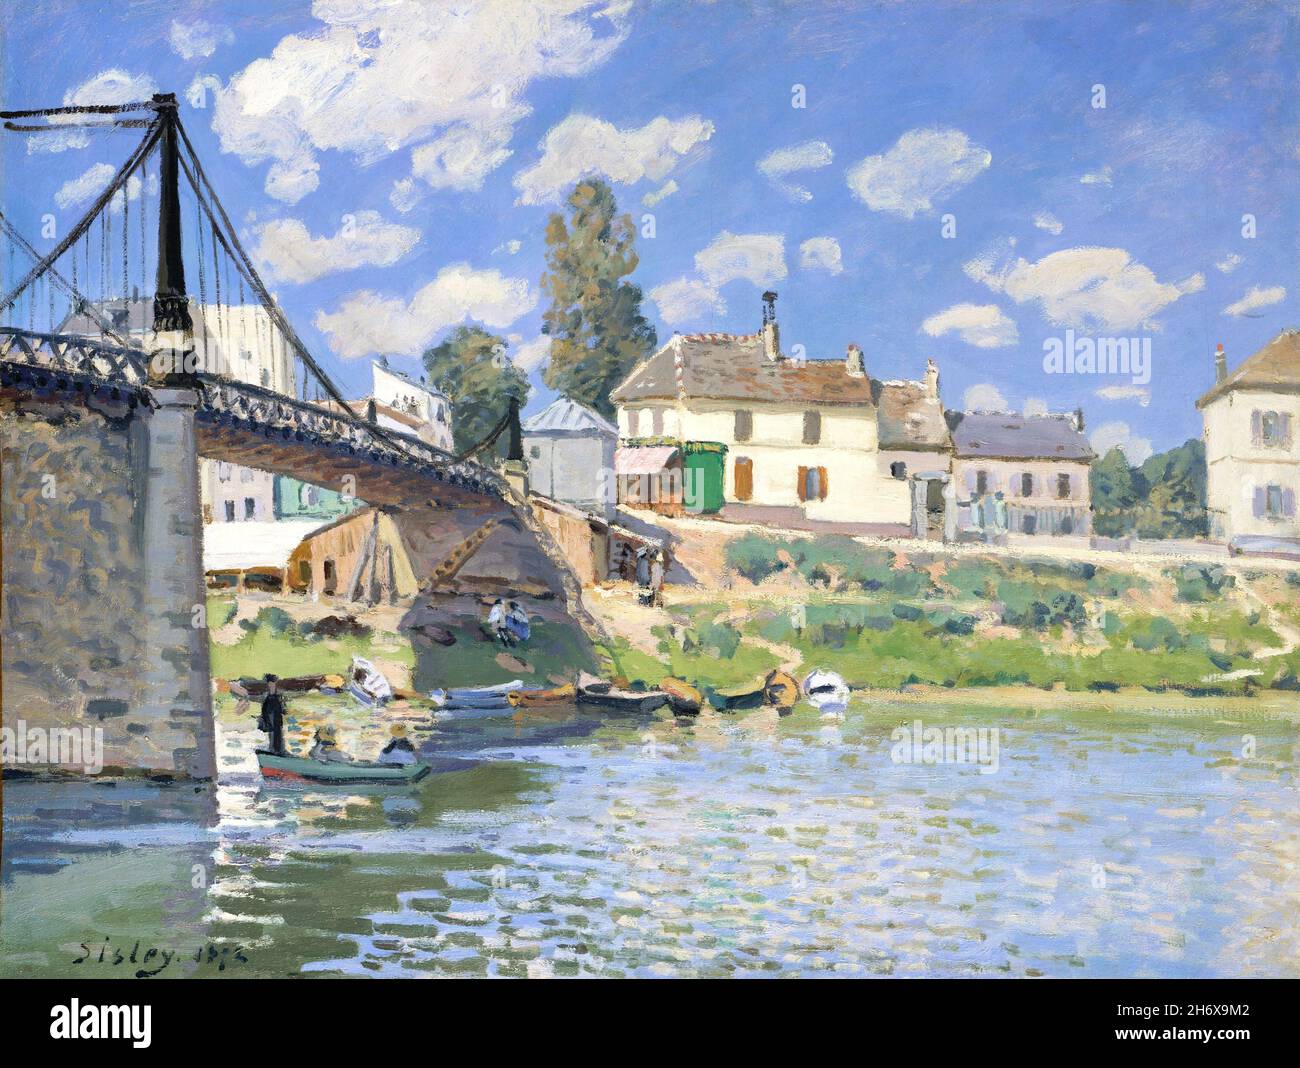 Le pont de Villeneuve-la-Garenne par Alfred Sisley (1839-1899), huile sur toile, 1872 Banque D'Images